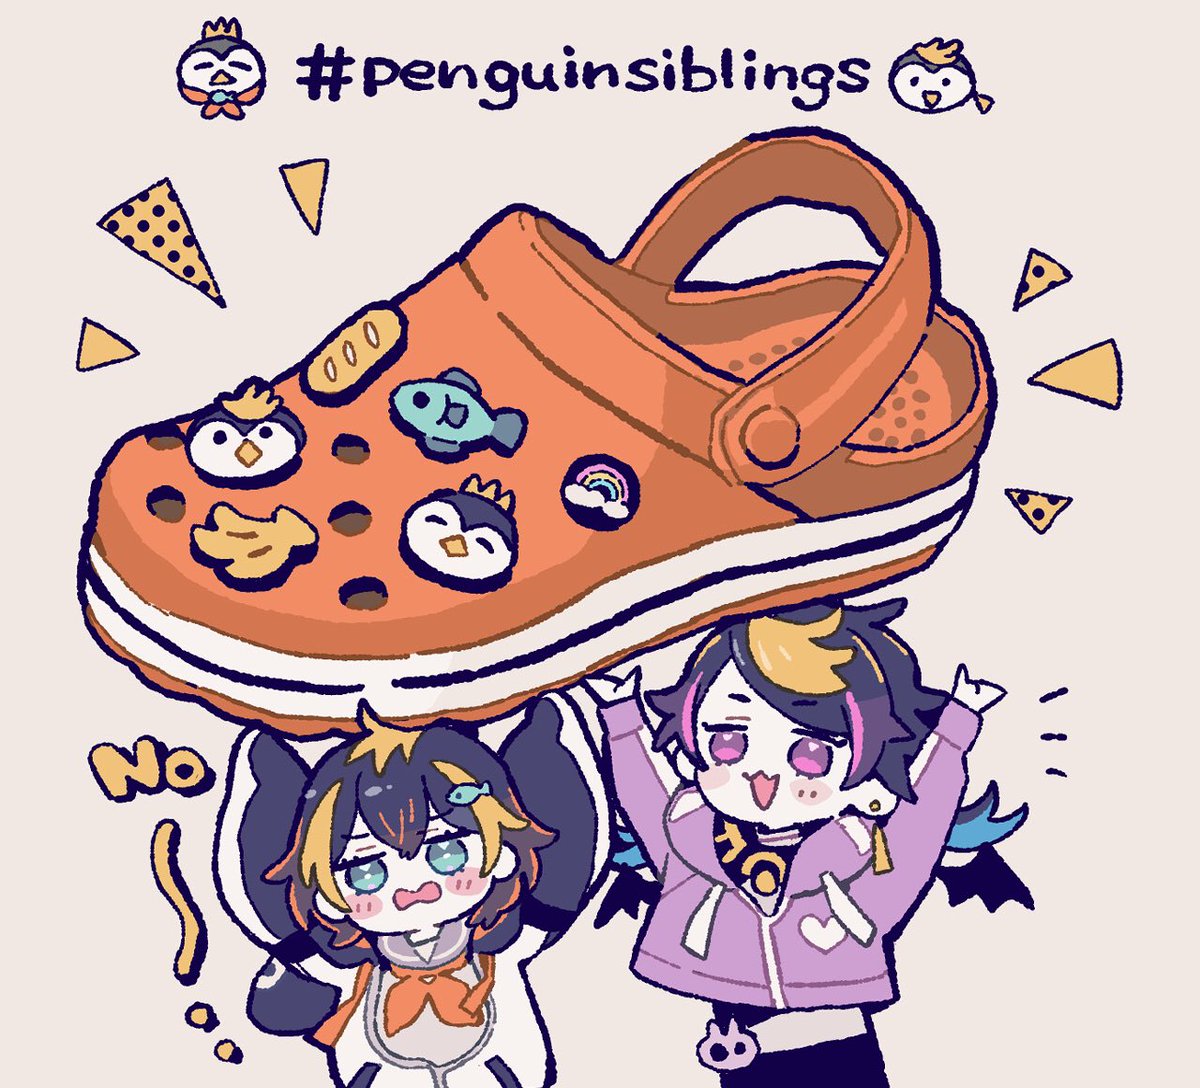 🐧🐟🐧🍌
#penguinsiblings 